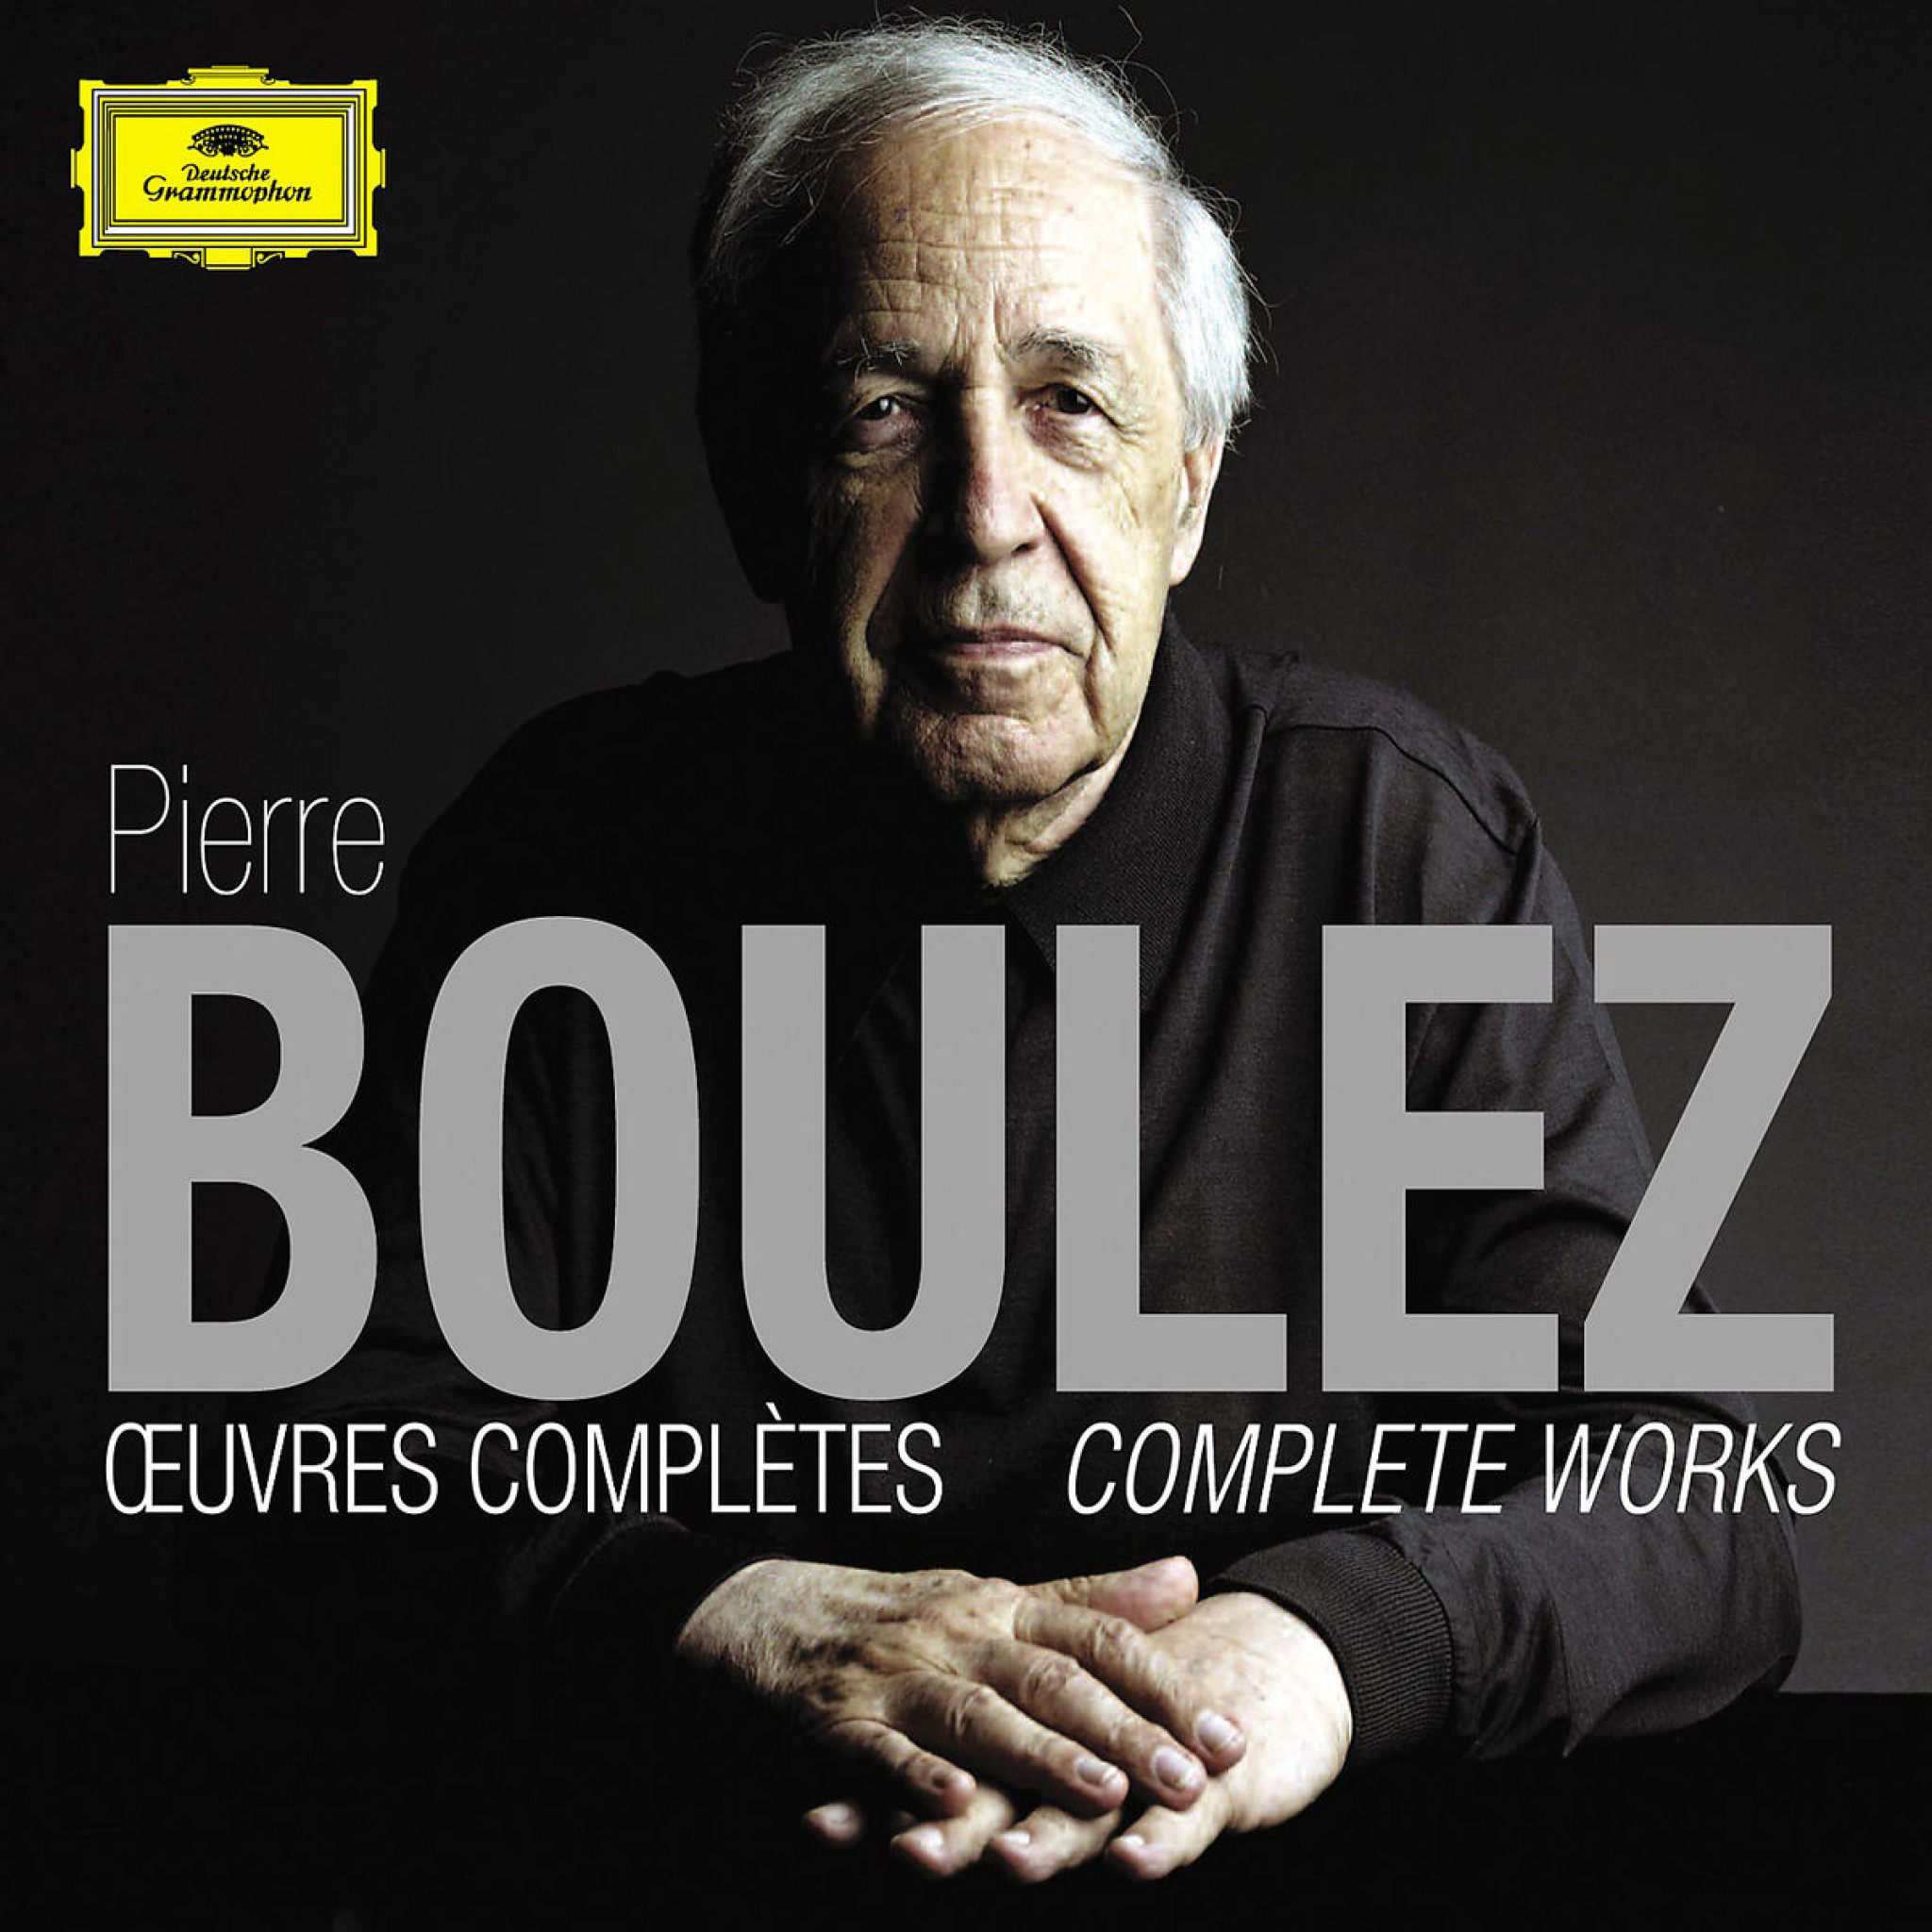 Pierre Boulez: Oeuvres complètes